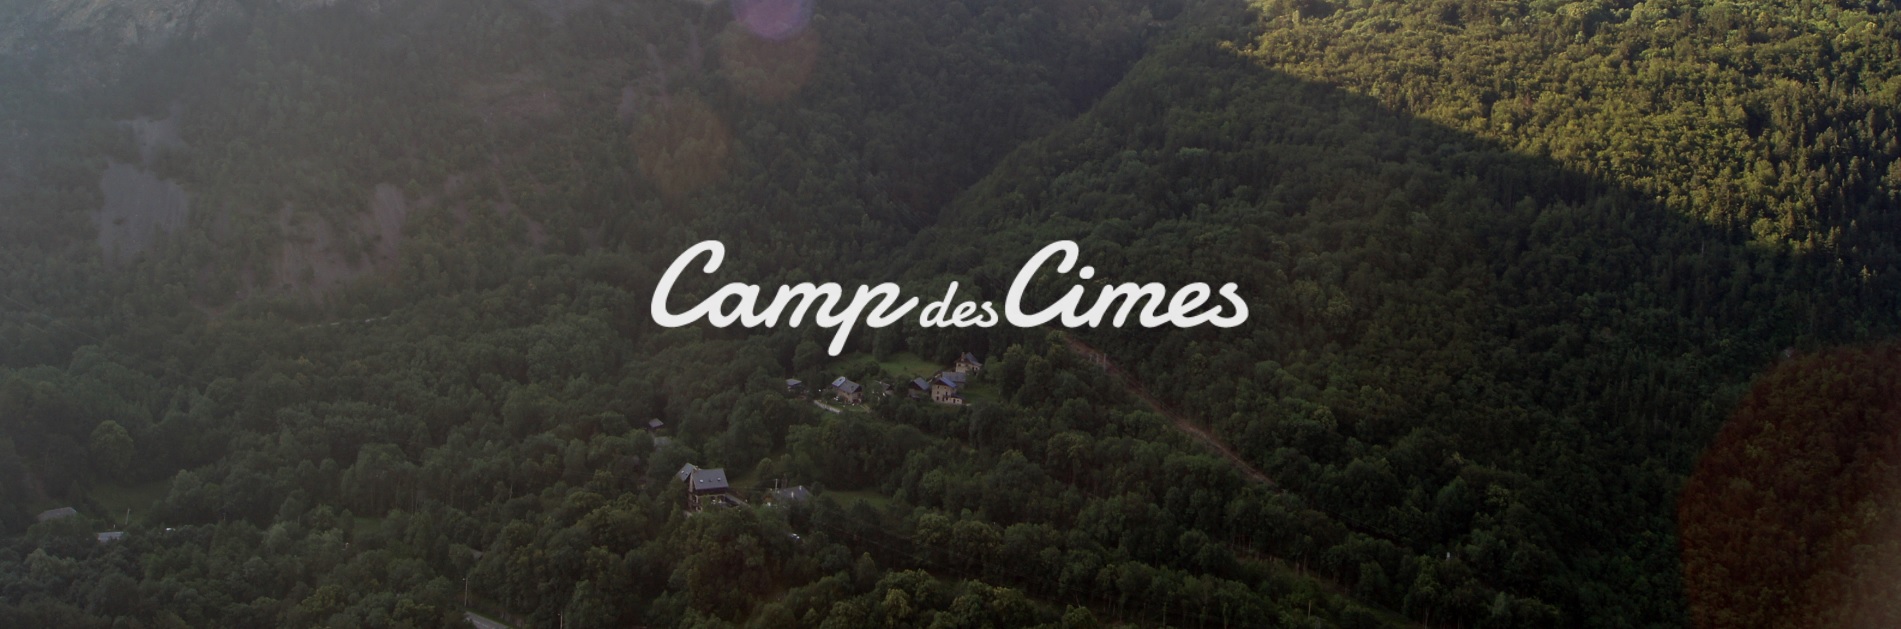 Camp des Cimes - France - Construction